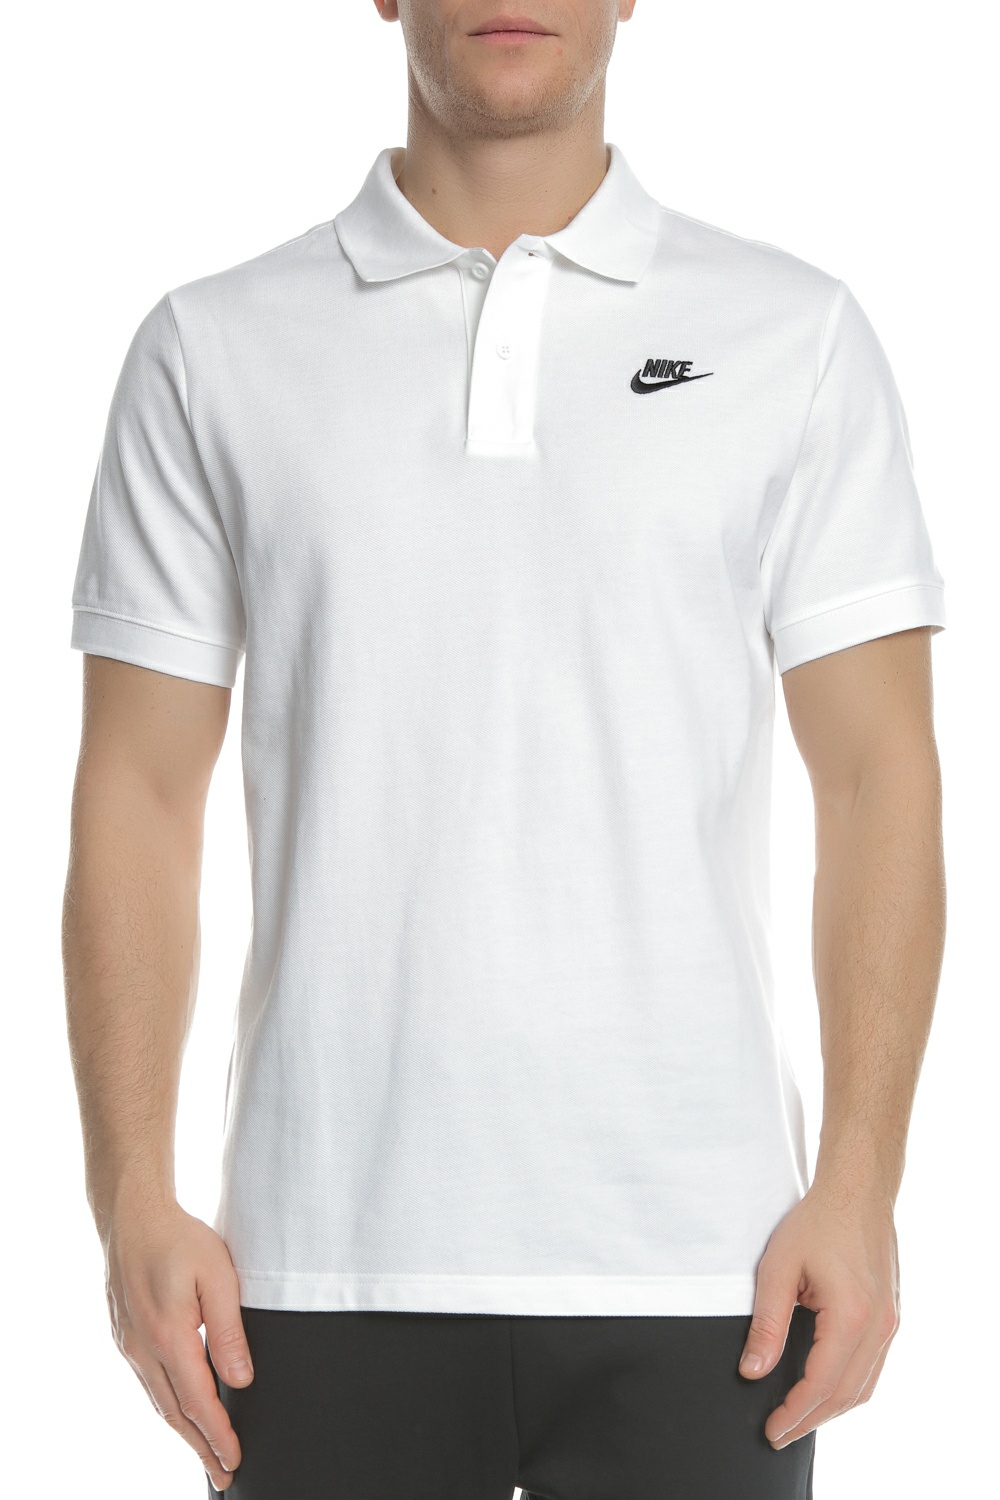 Ανδρικά/Ρούχα/Μπλούζες/Πόλο NIKE - Ανδρική πόλο μπλούζα NIKE MATCHUP PQ λευκή